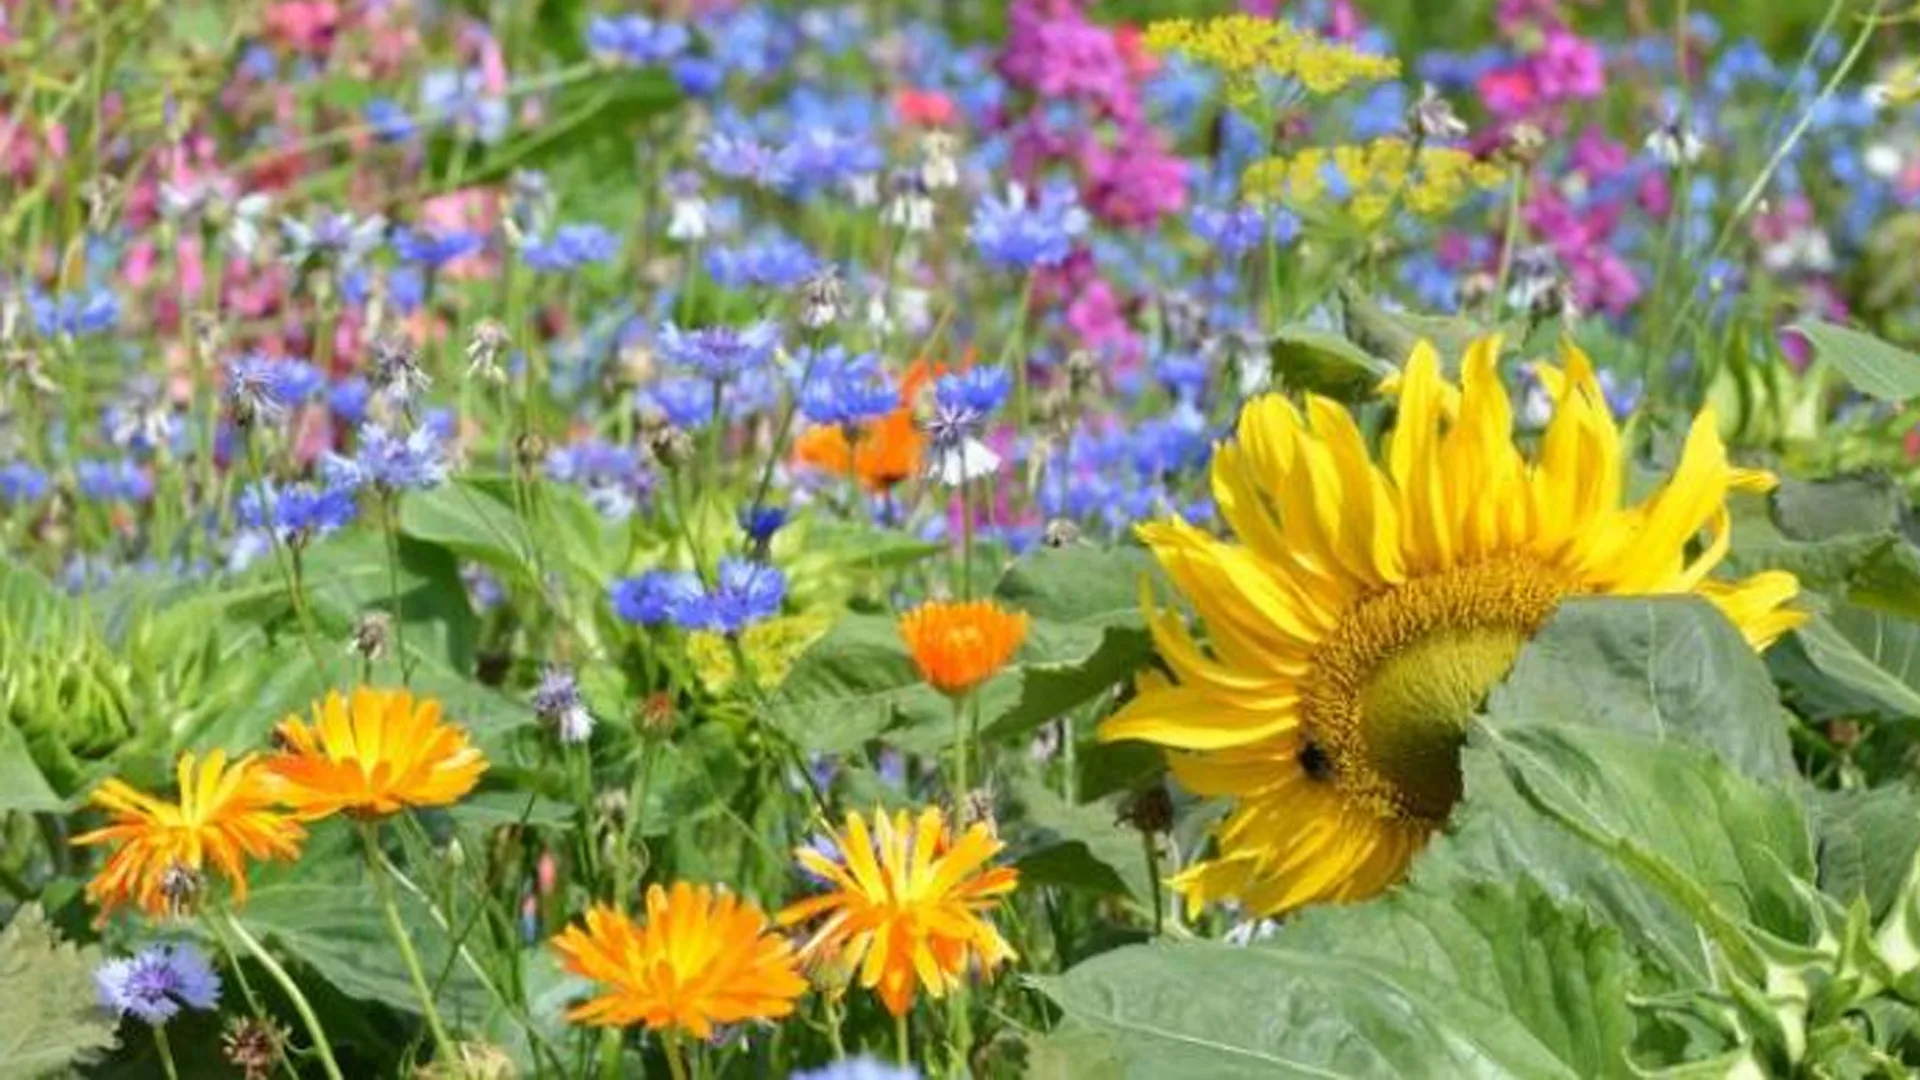 grot Kaliber uitbreiden Meer bloemen moeten zorgen voor grotere biodiversiteit in Deurne; inwoners  krijgen gratis bloemmengsel | Deurne Media Groep